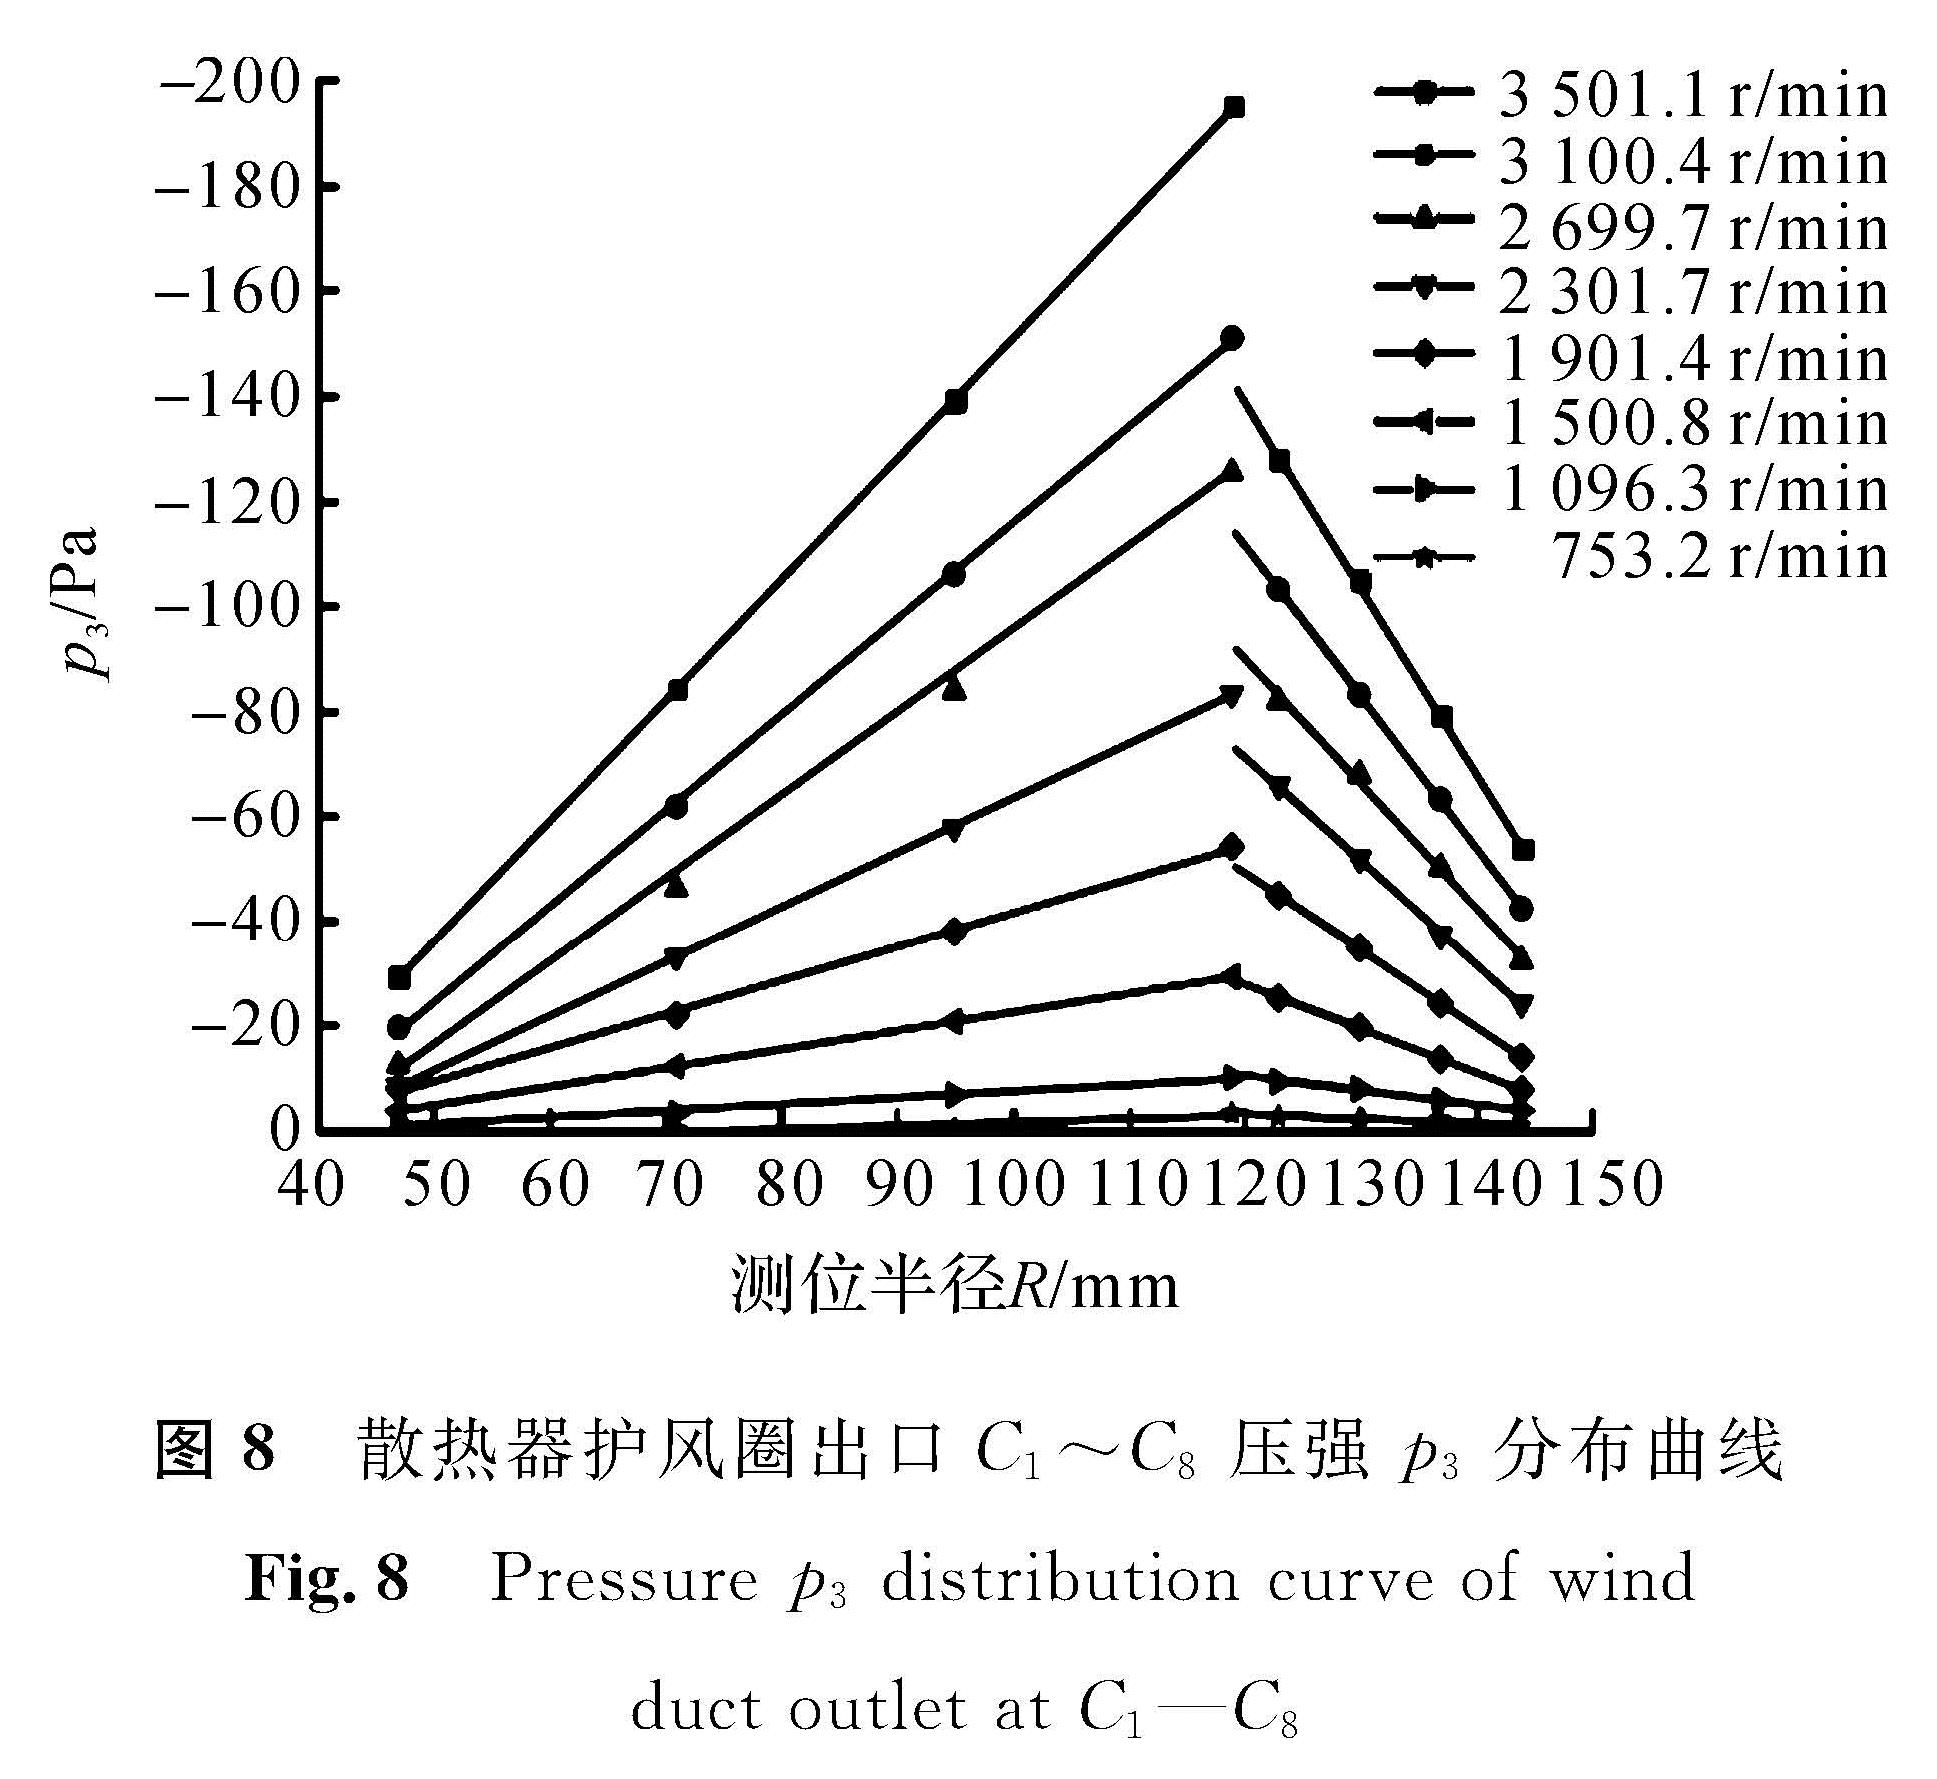 图8 散热器护风圈出口C1～C8压强p3分布曲线<br/>Fig.8 Pressure p3 distribution curve of wind duct outlet at C1—C8